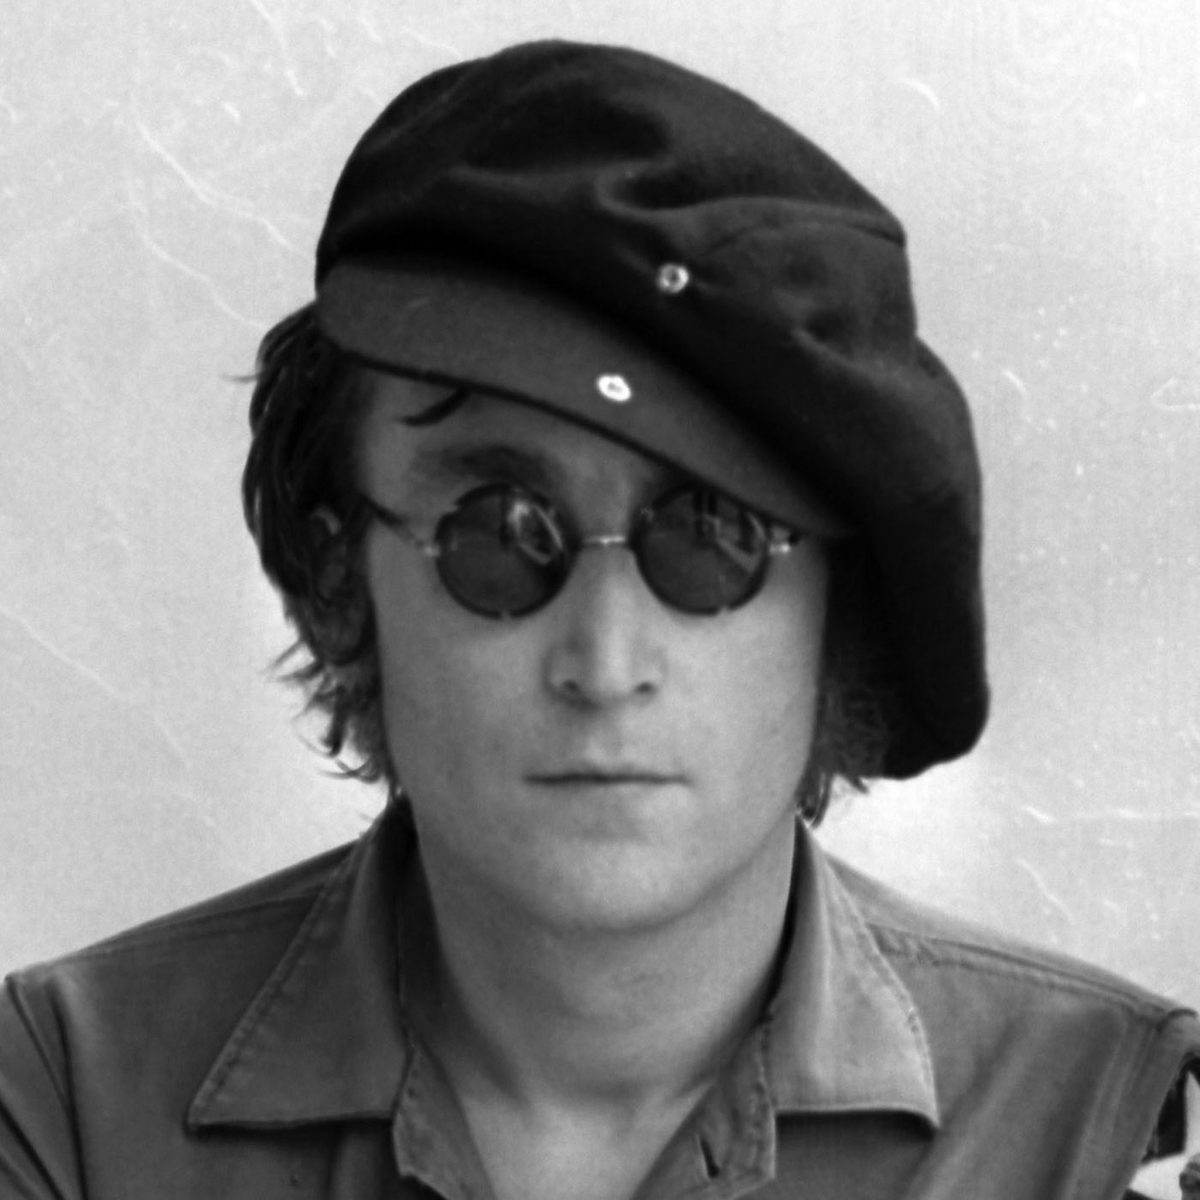 Reincarnation Case of Michael Byrne of HMS Bounty | John Lennon